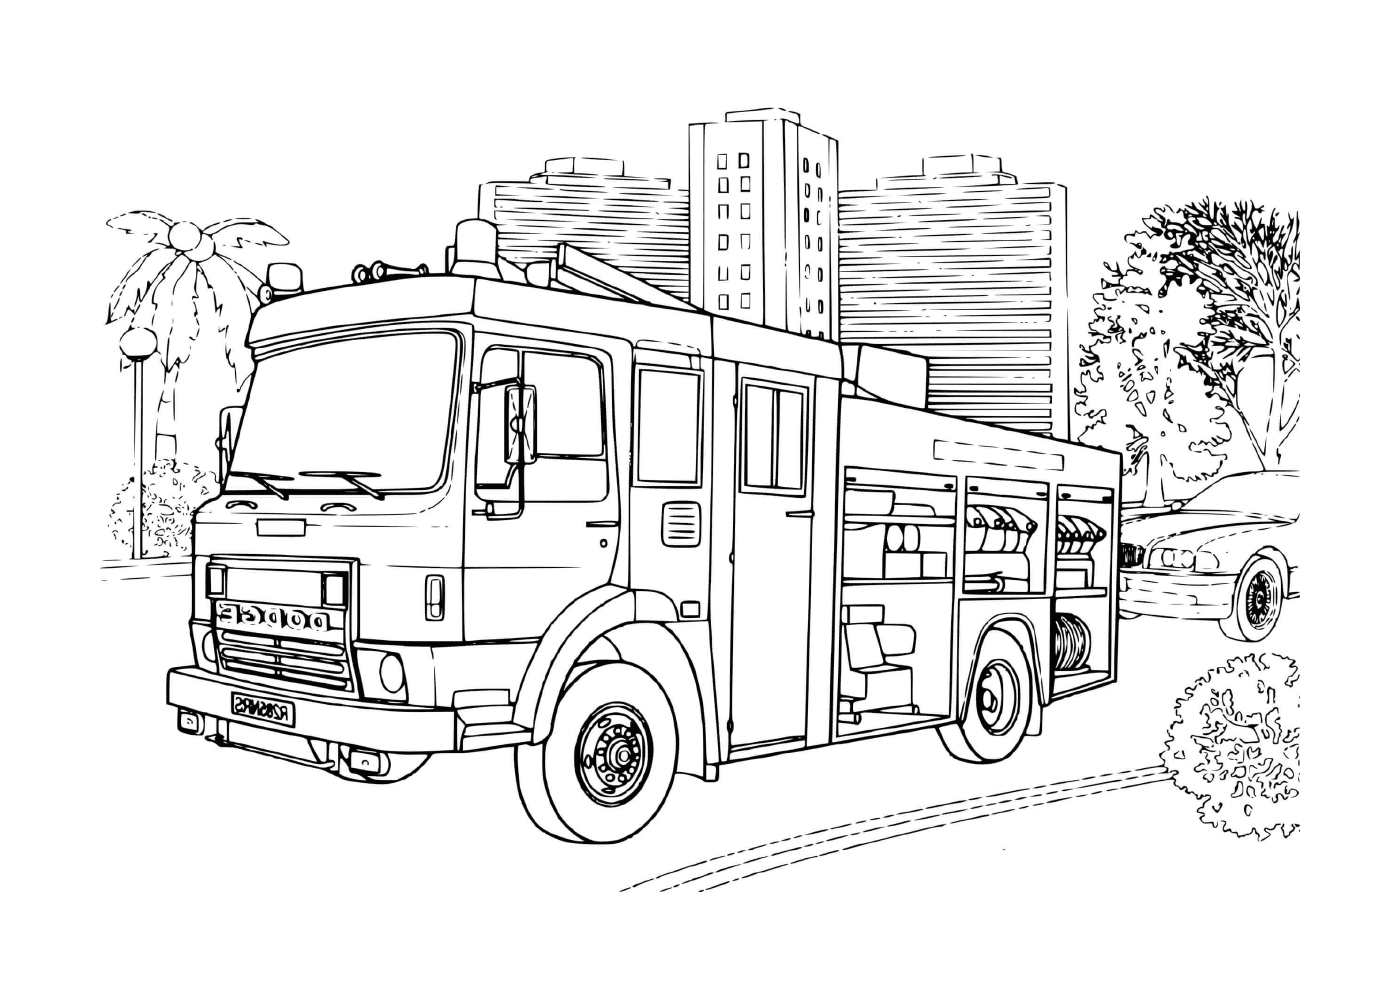  un camion del fuoco di marca Dodge 